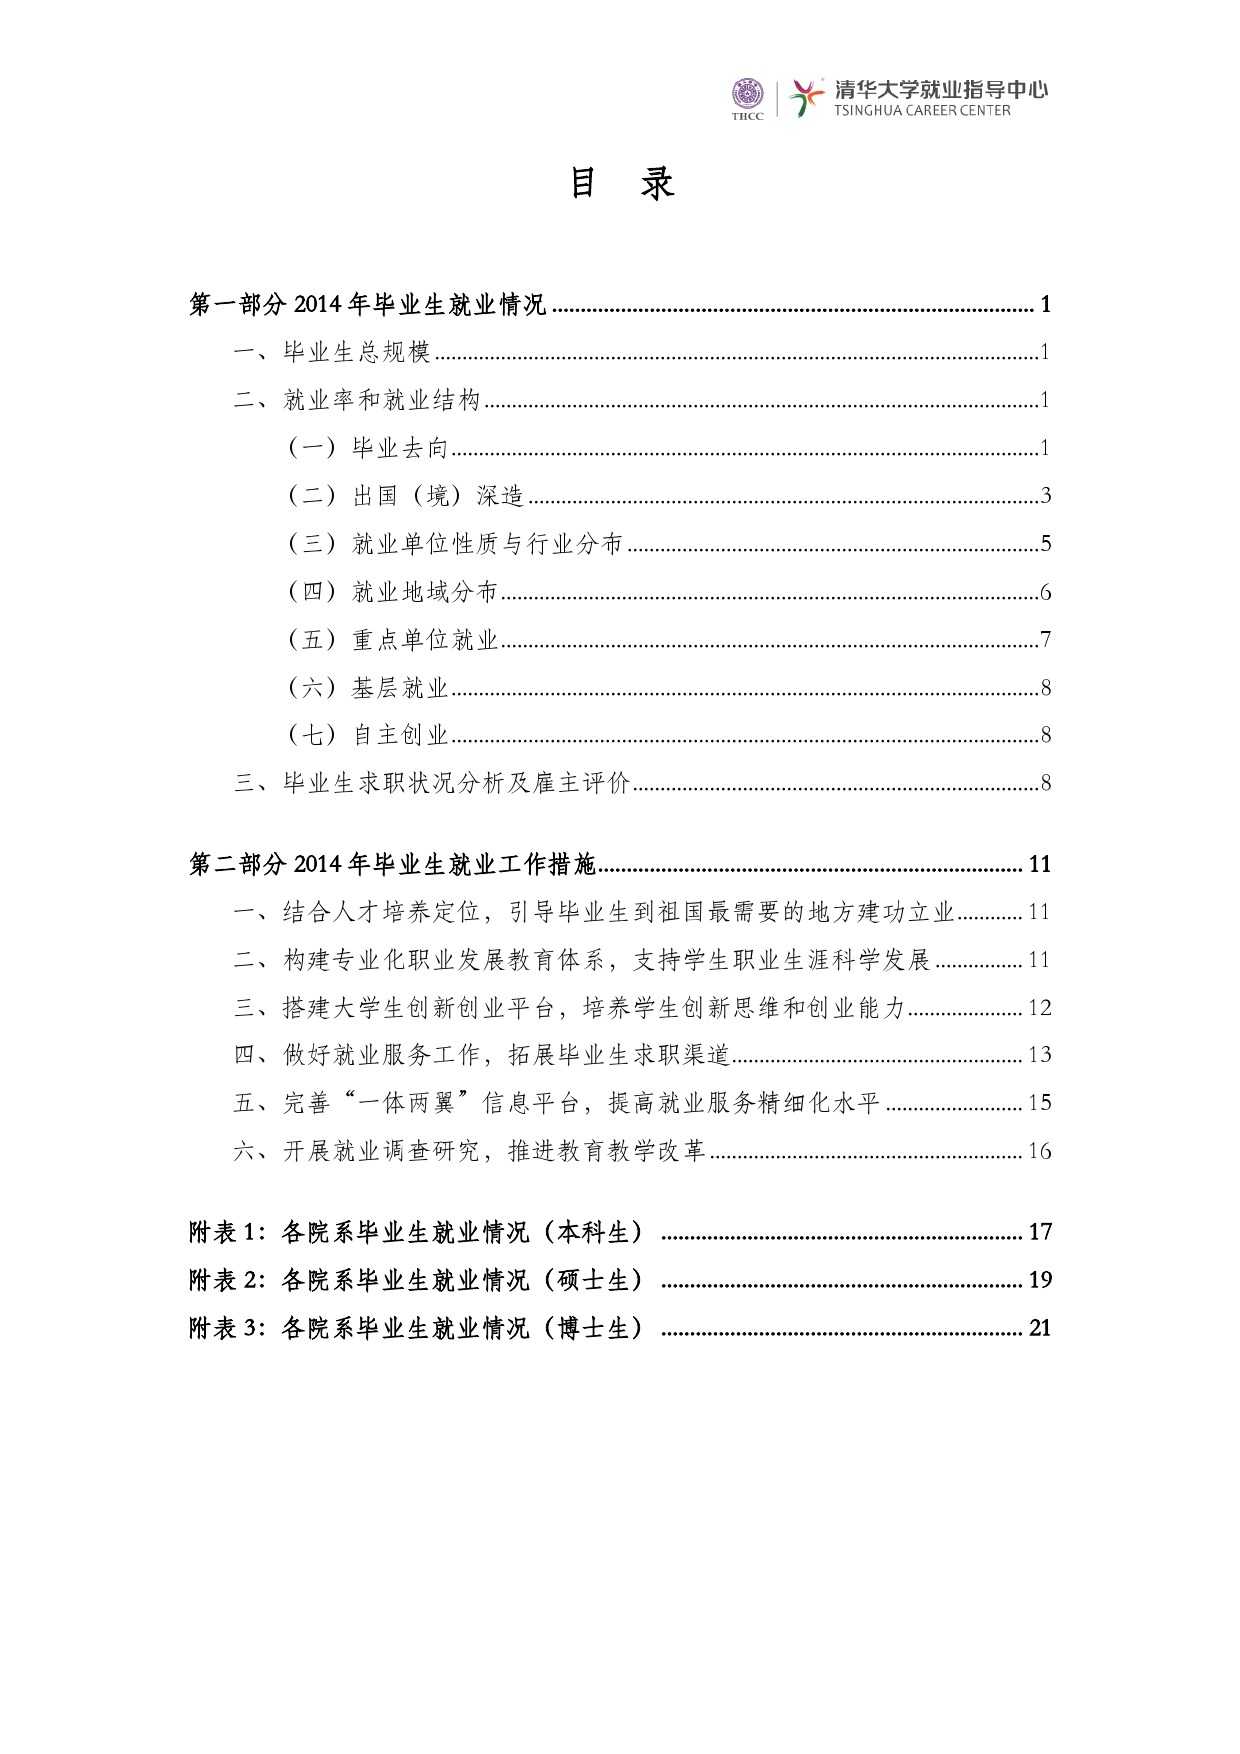 清華大學2014 年畢業生就業質量報告_000002